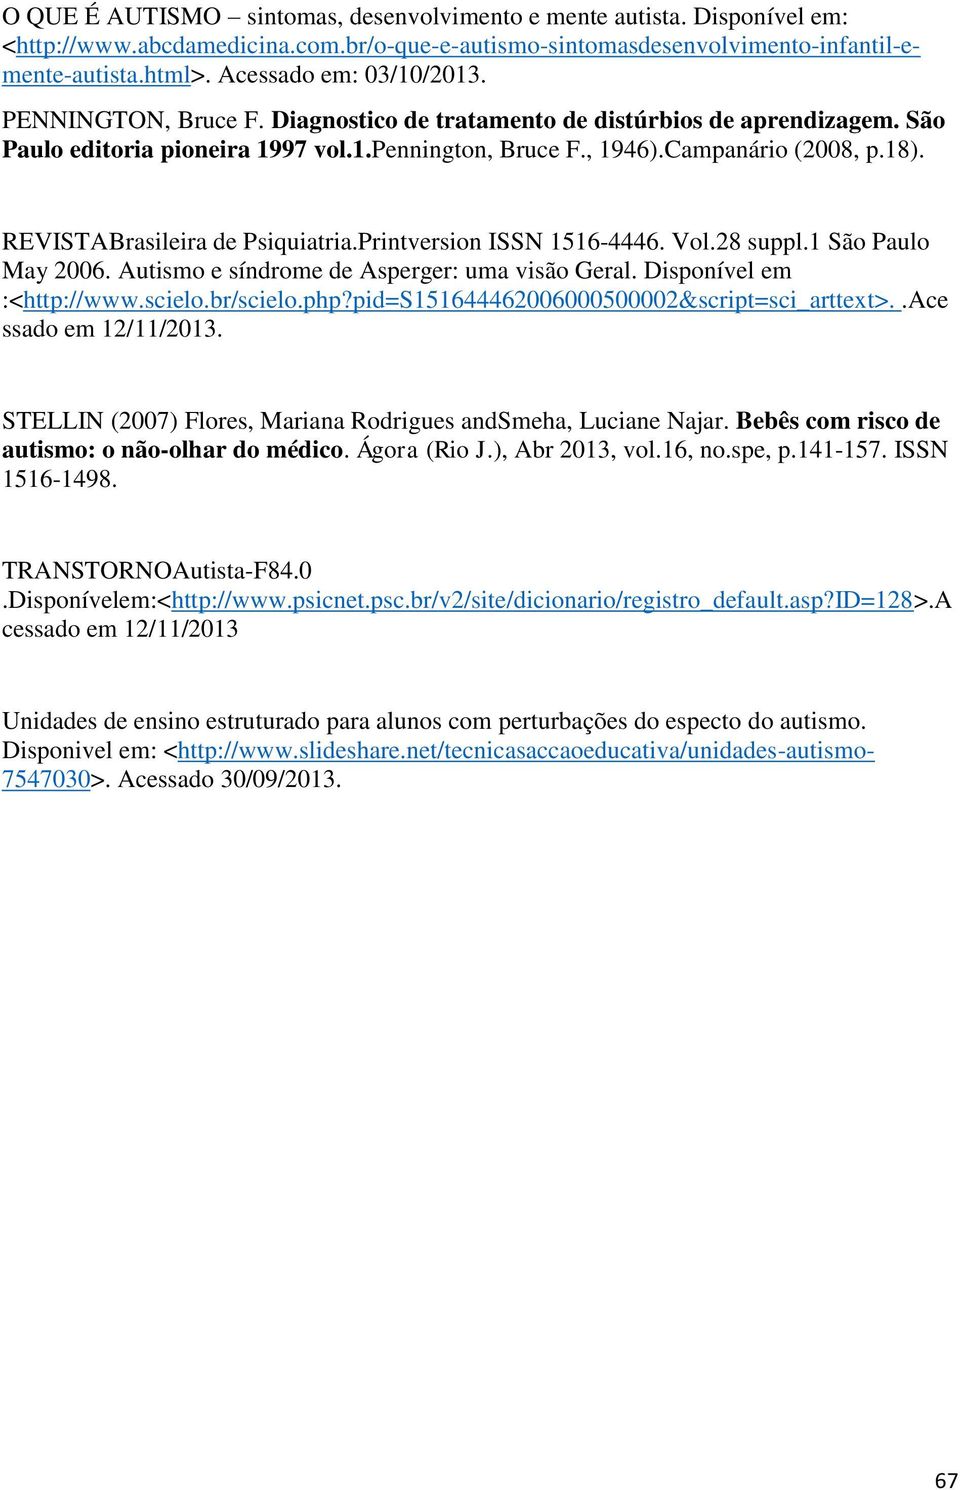 REVISTABrasileira de Psiquiatria.Printversion ISSN 1516-4446. Vol.28 suppl.1 São Paulo May 2006. Autismo e síndrome de Asperger: uma visão Geral. Disponível em :<http://www.scielo.br/scielo.php?